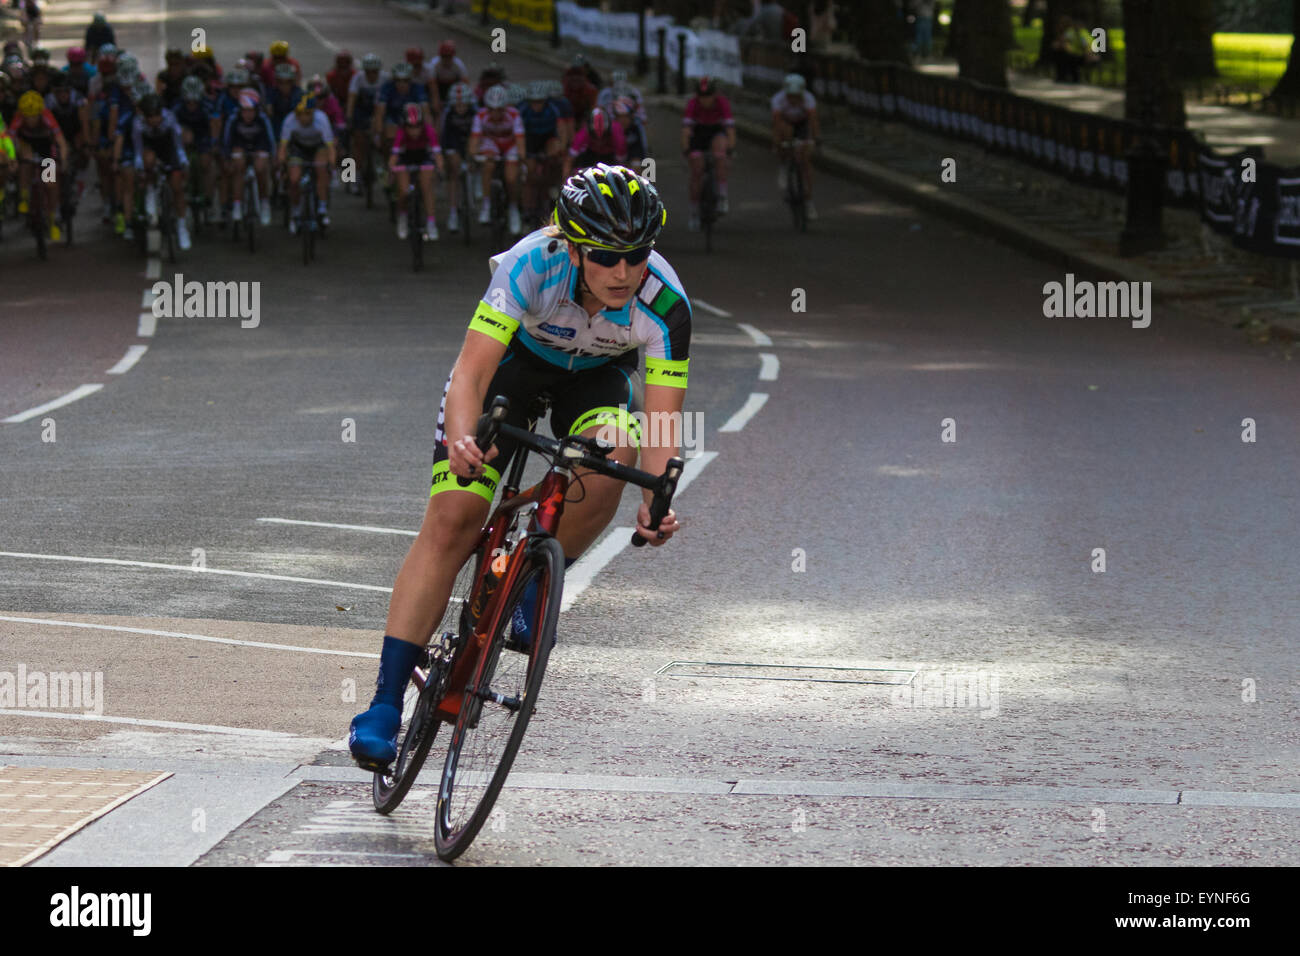 Westminster, London, 1. August 2015. Top Frauen Radfahrer konkurrieren in den aufsichtsrechtlichen Fahrt London Grand Prix nahe St James Park. Stockfoto